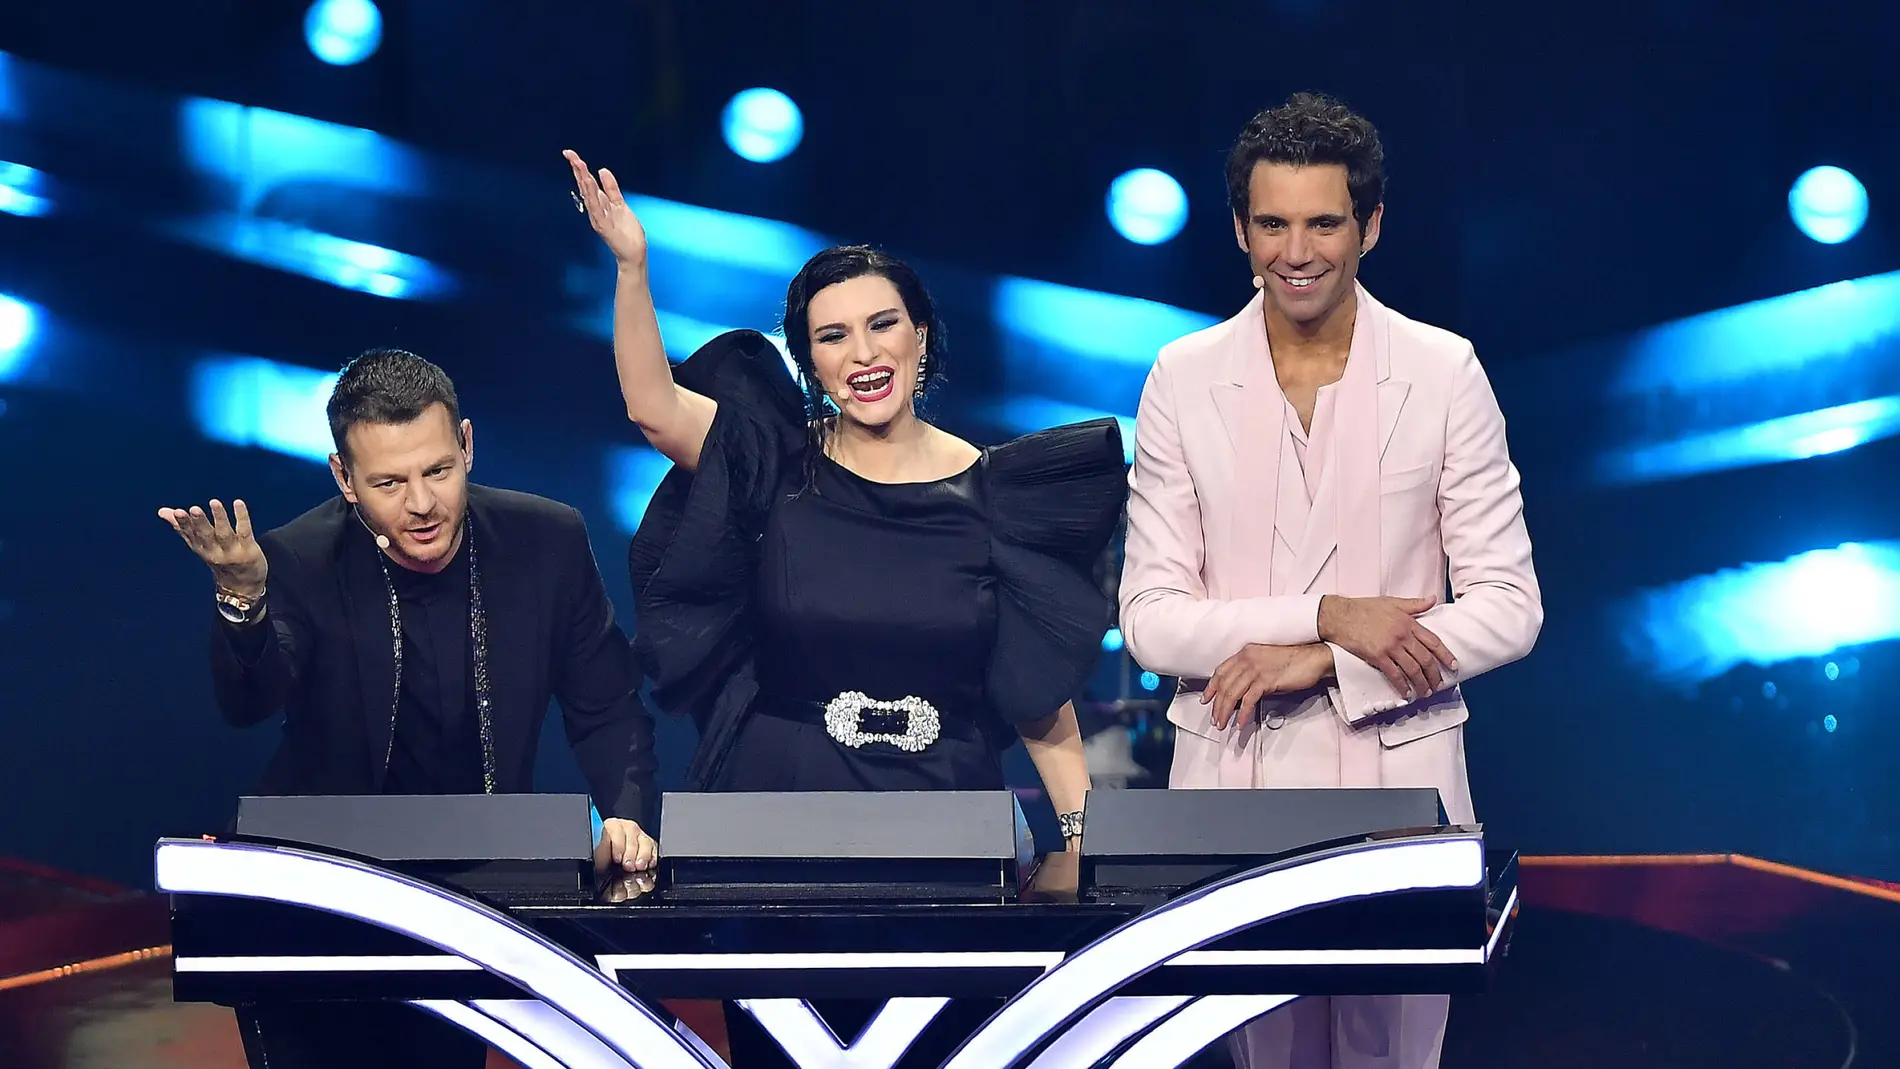 Alessandro Cattelan, Laura Pausini y Mika, presentadores de Eurovisión 2022